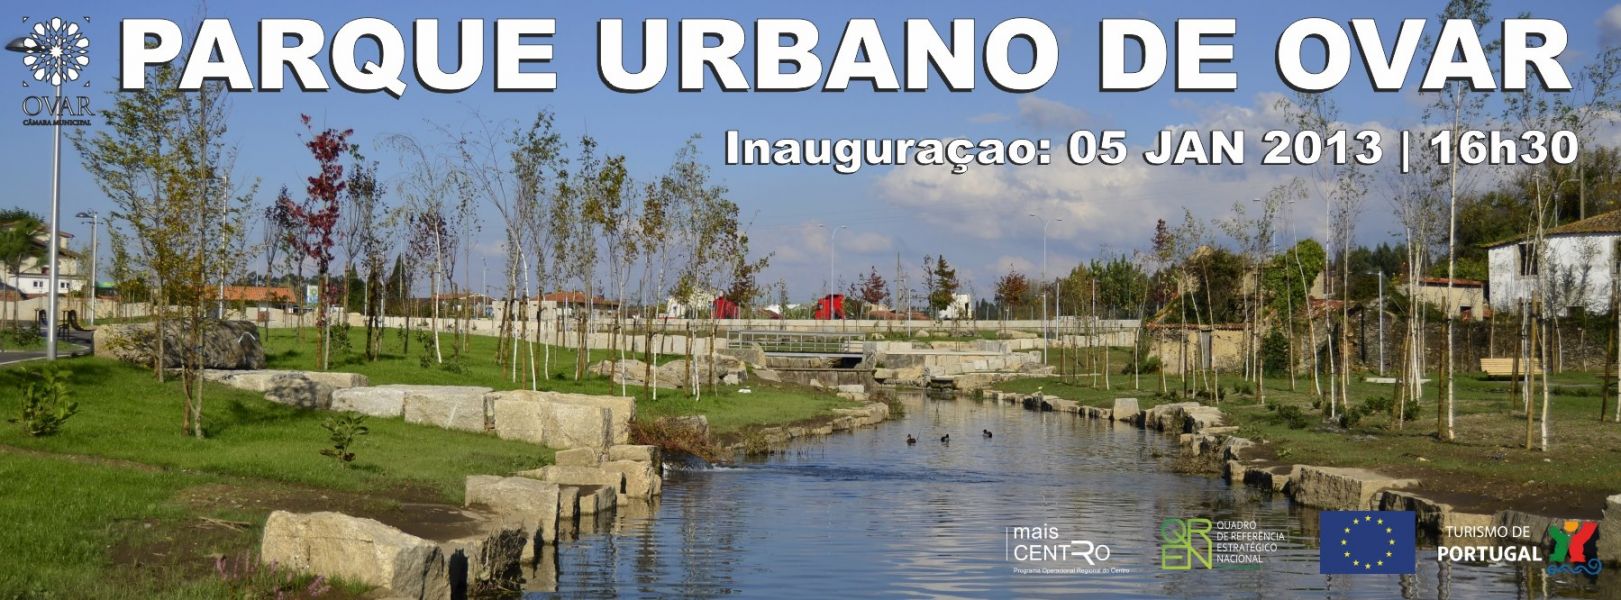 Parque Urbano de Ovar